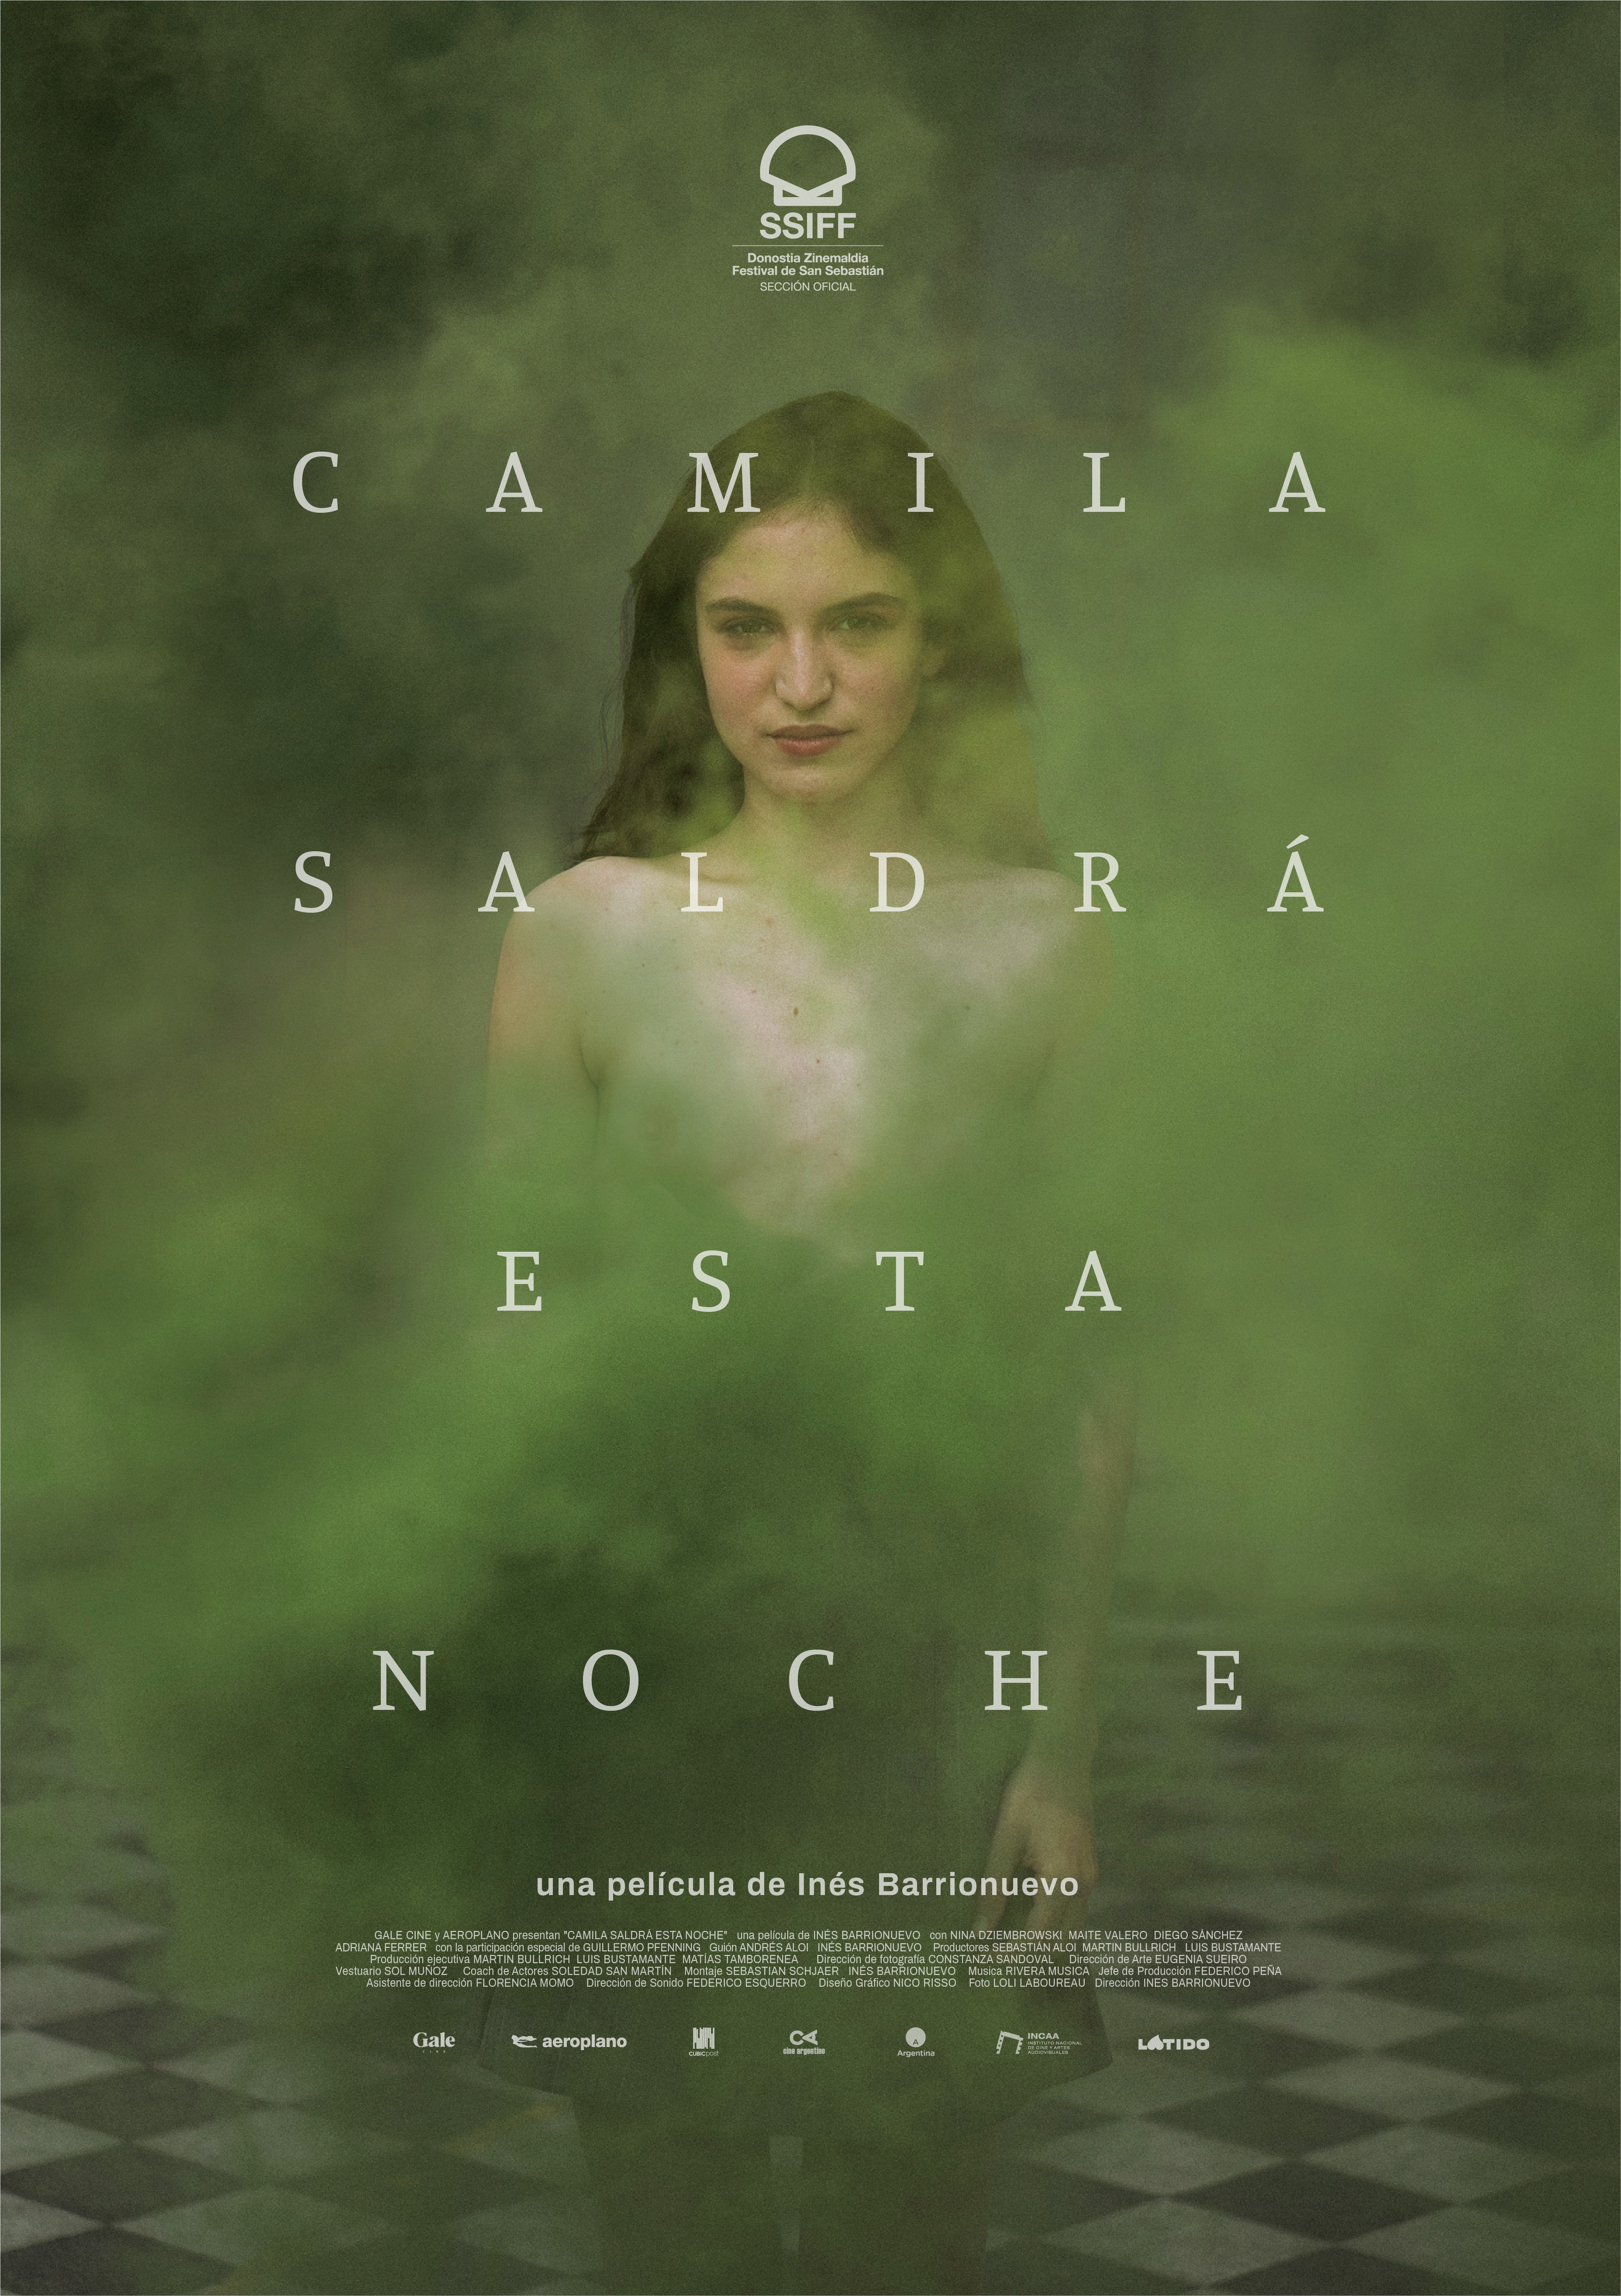 Camila saldrá esta noche (2021) постер